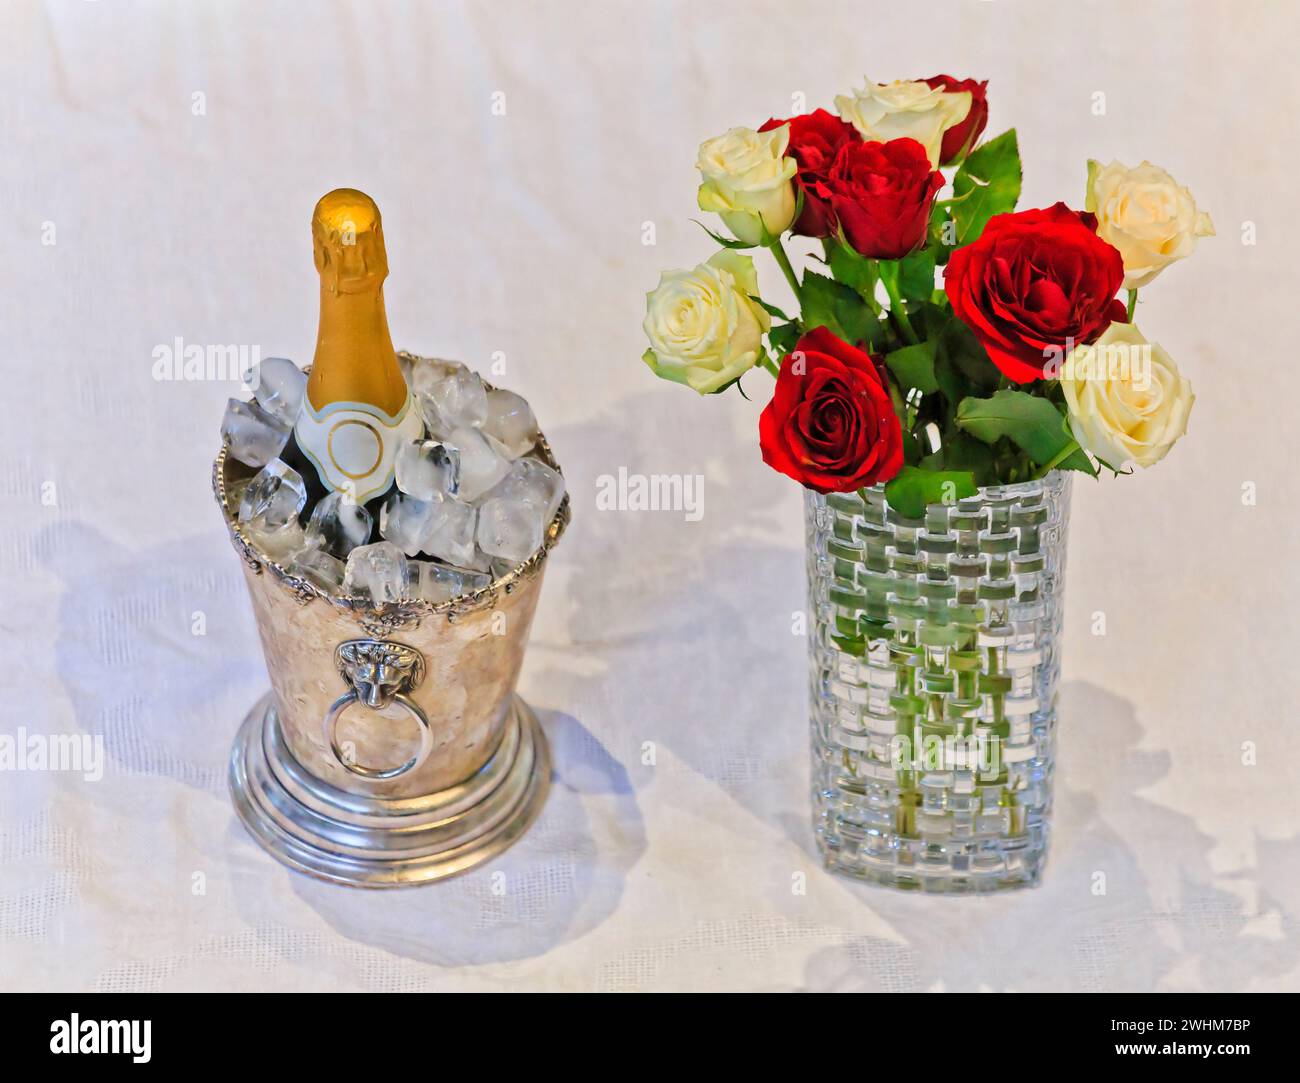 Luxuriöser Lebensstil mit einer Flasche Weißwein im Eiskübel und Blumenstrauß in einer Vase auf weißem Tischtuch. Stockfoto